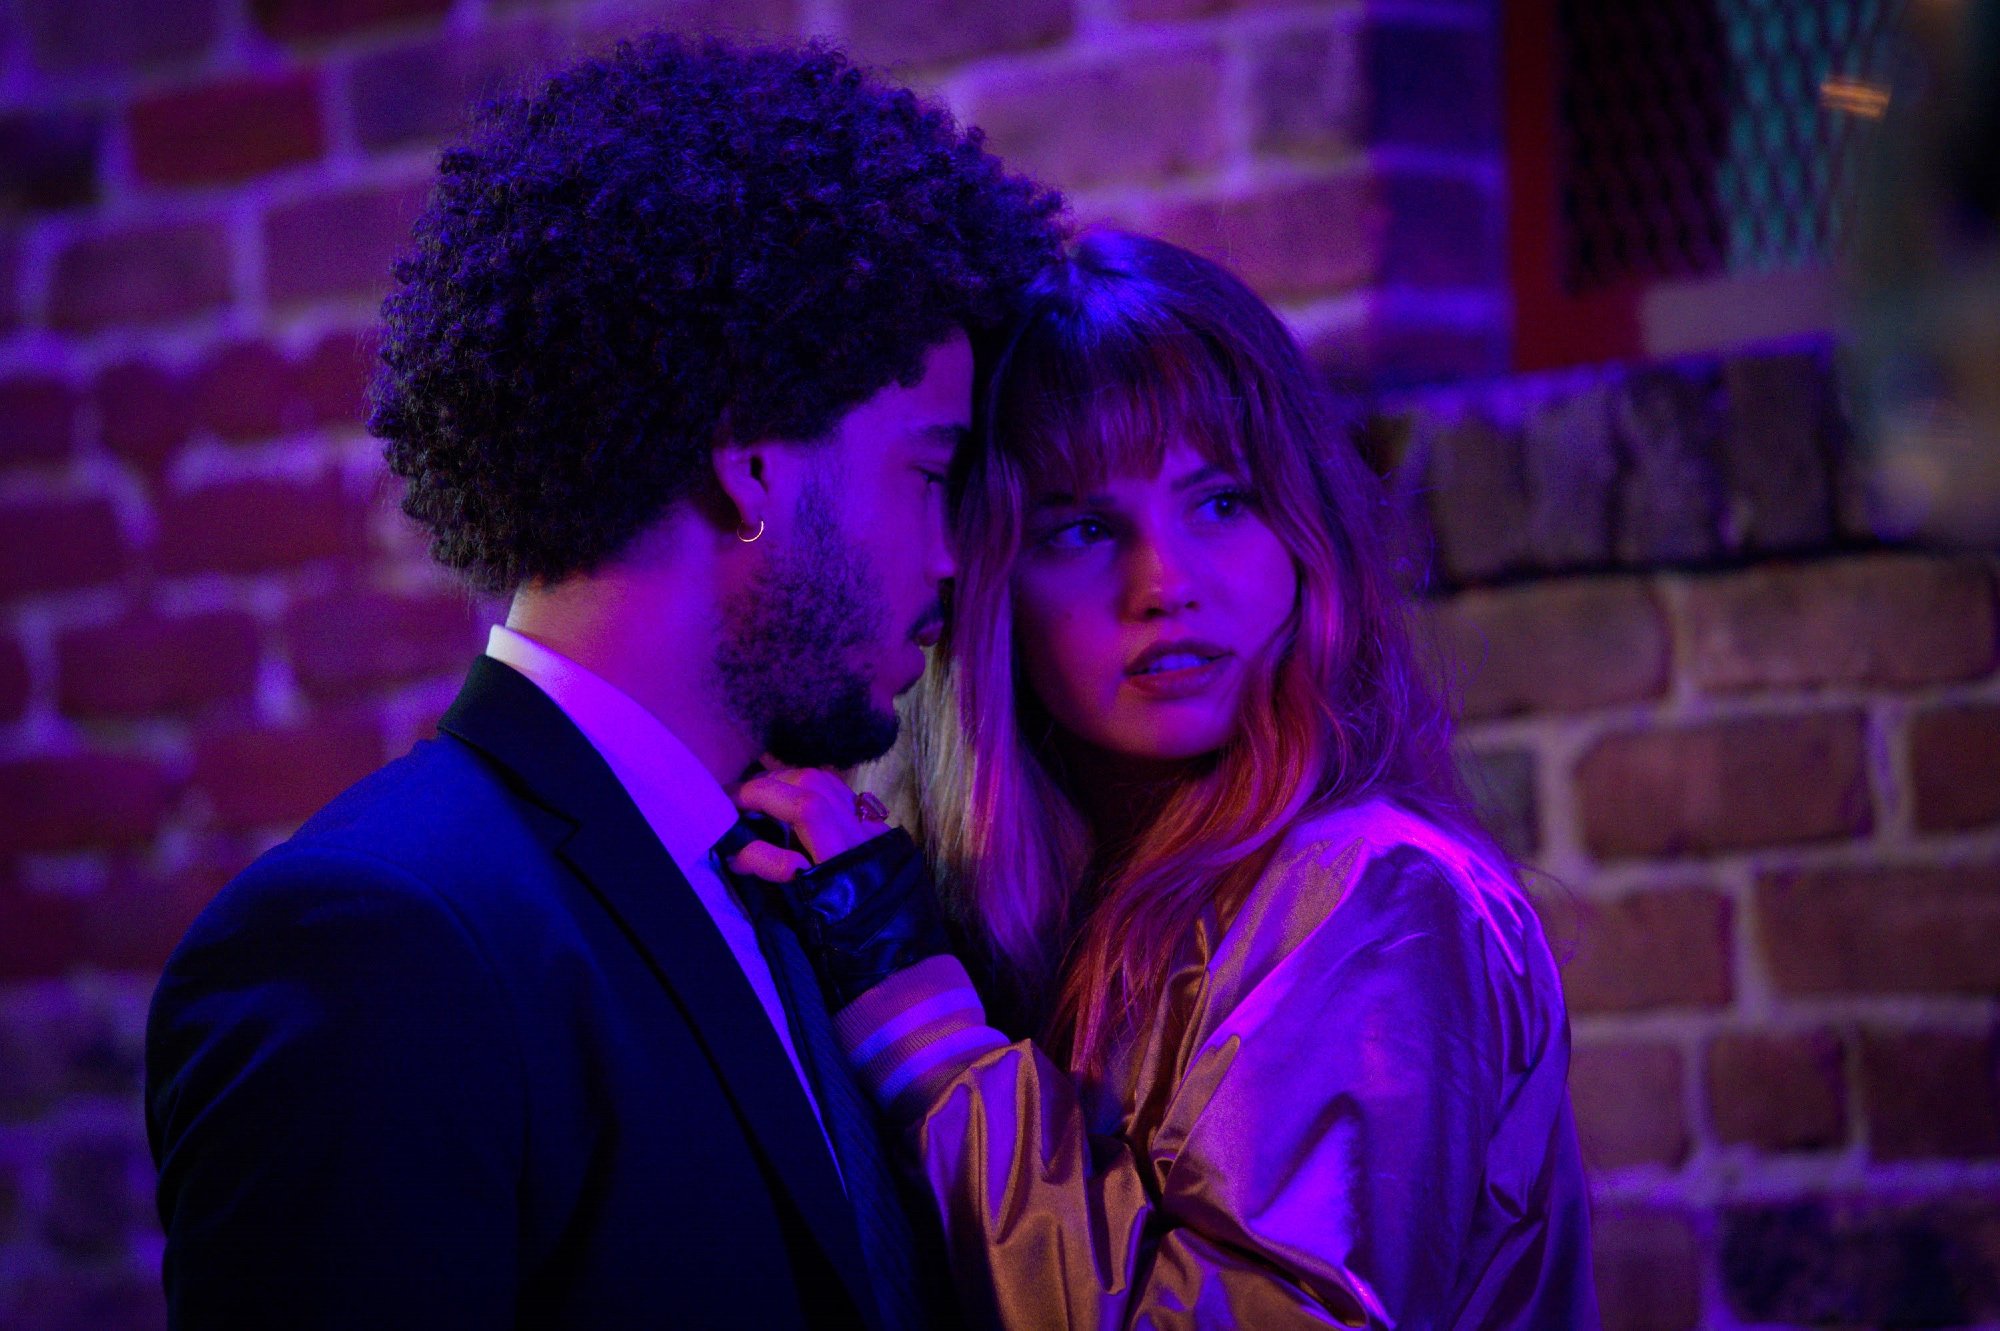 'Night Teeth' stars Jorge Lengeborg Jr. as Benny and Deborah Ryan Papp as Blaire standing close in nightclub lighting